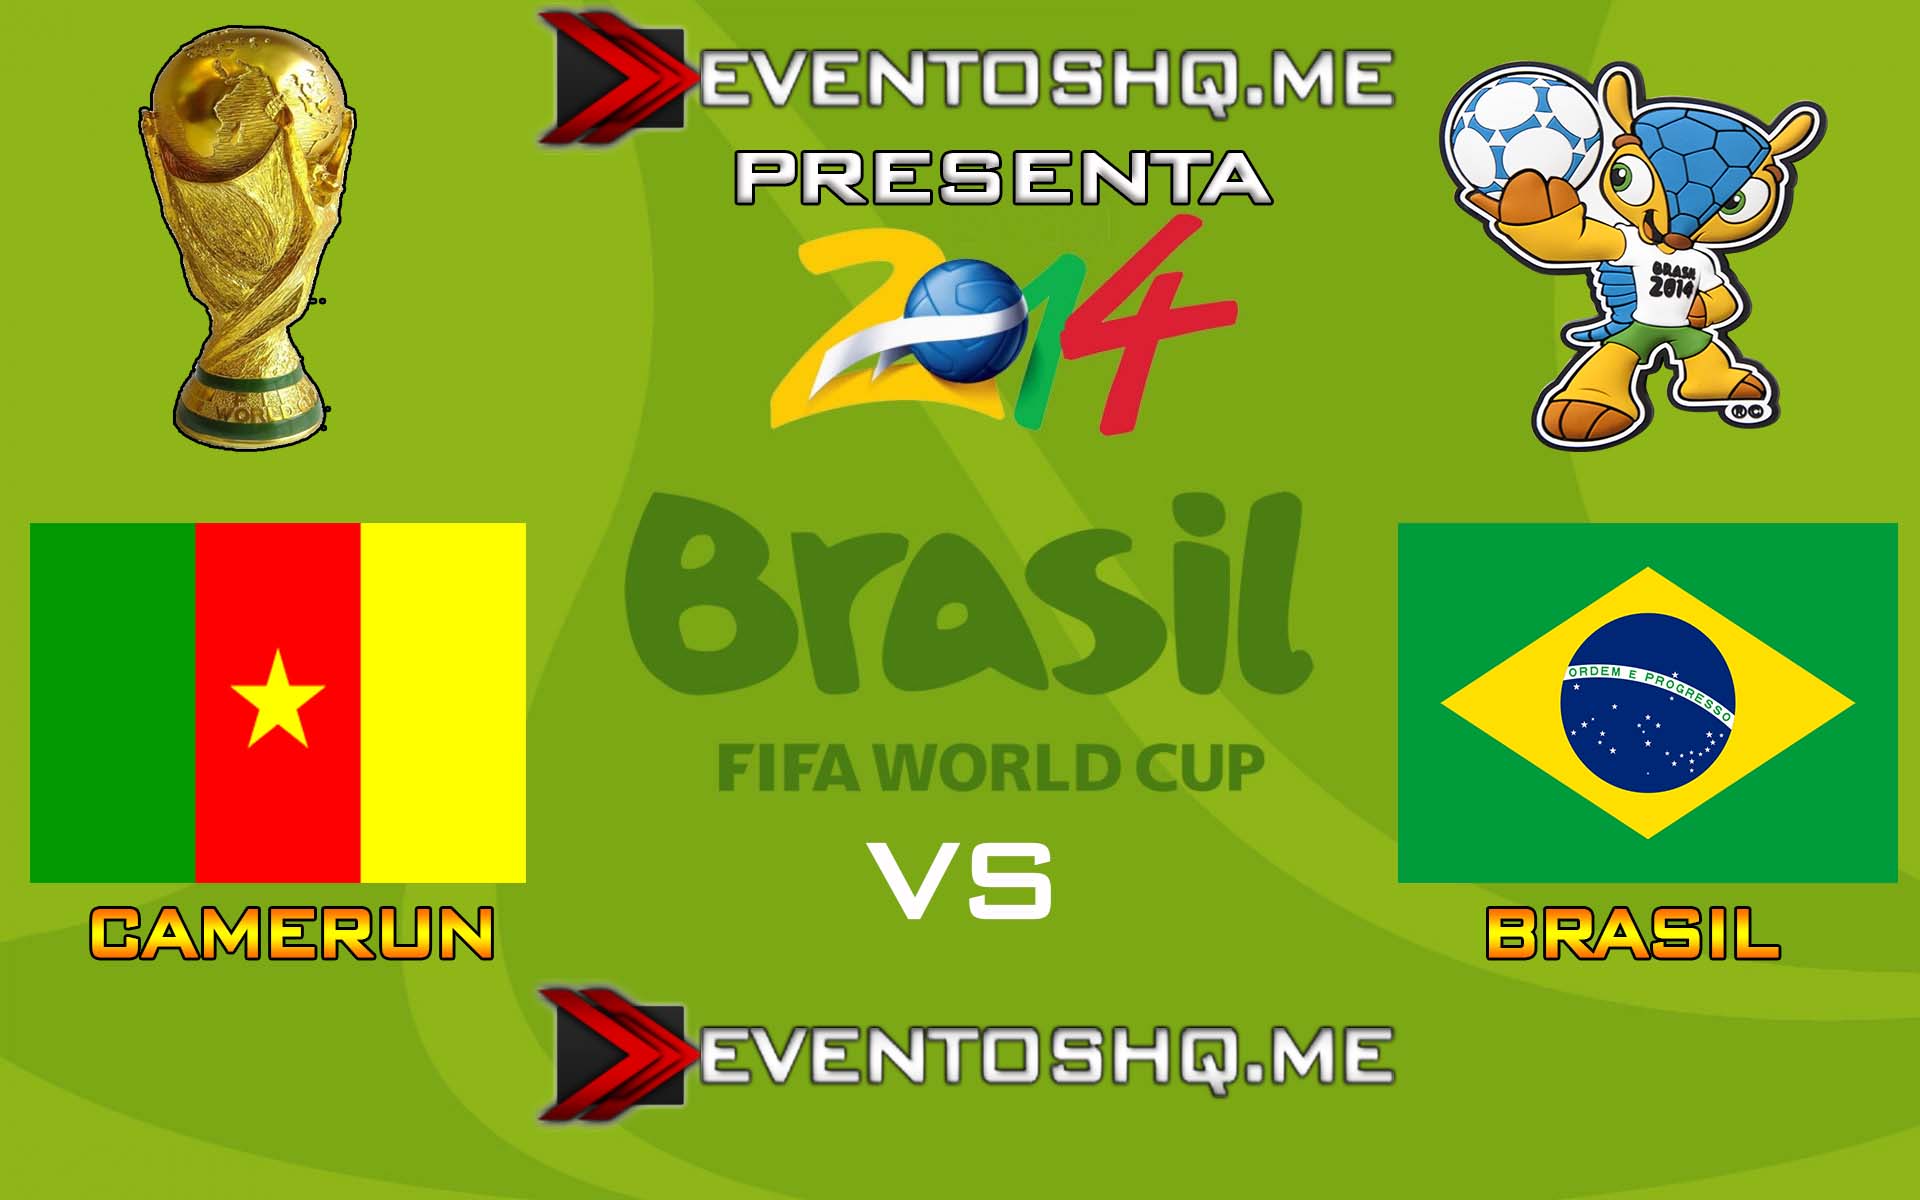 Ver en Vivo Camerun vs Brasil Mundial Brasil 2014 www.eventoshq.me